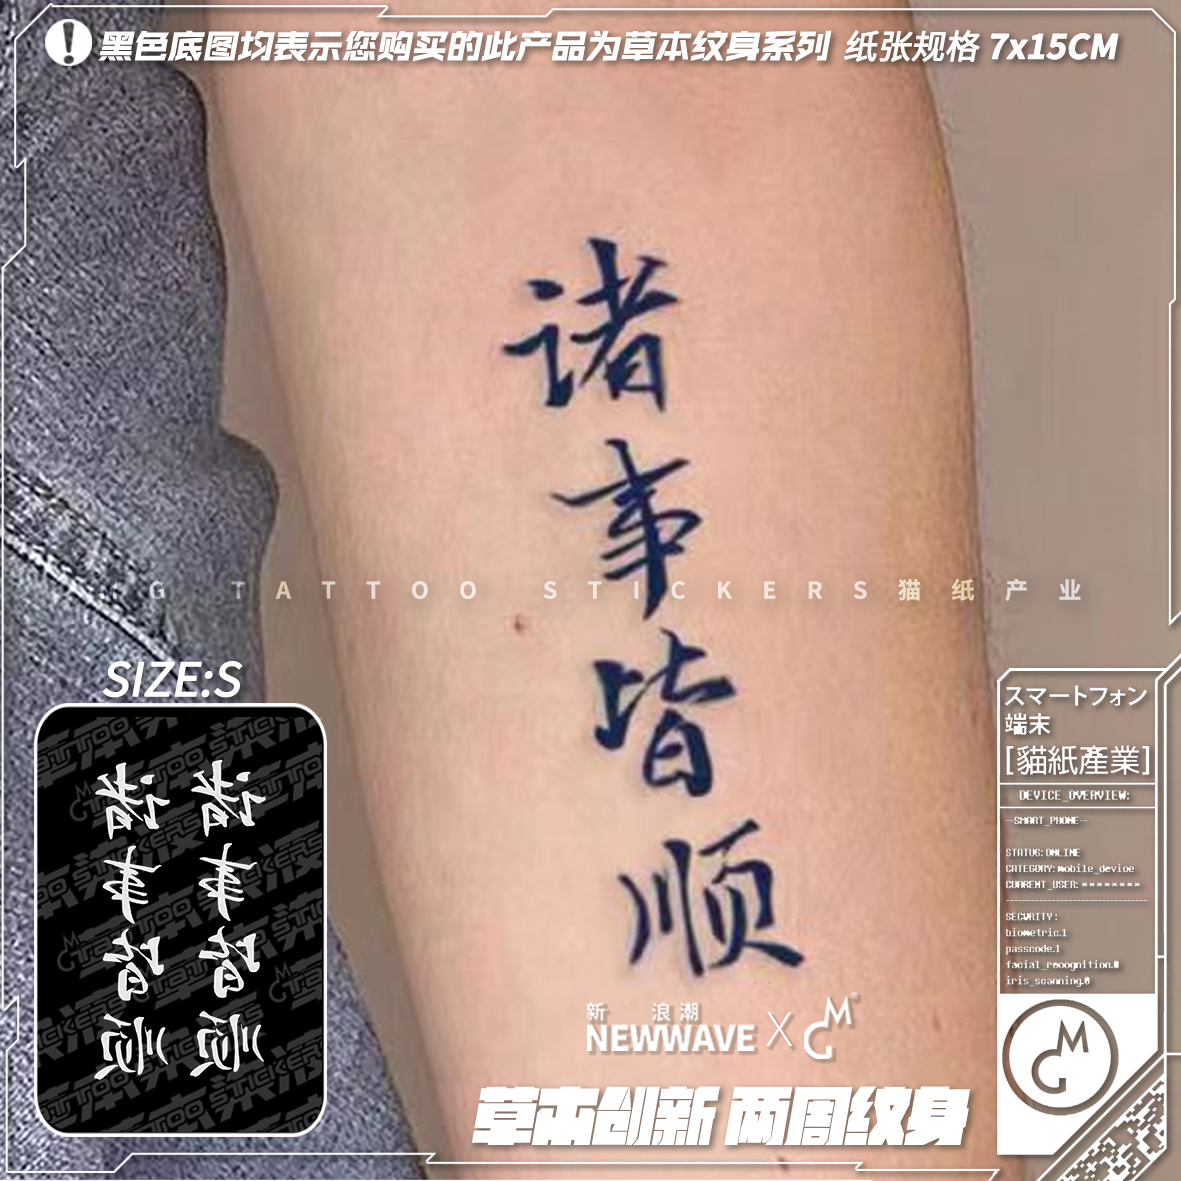 MG tattoo 草本染液 诸事皆顺 中国风书法文字国潮草本纹身贴纸